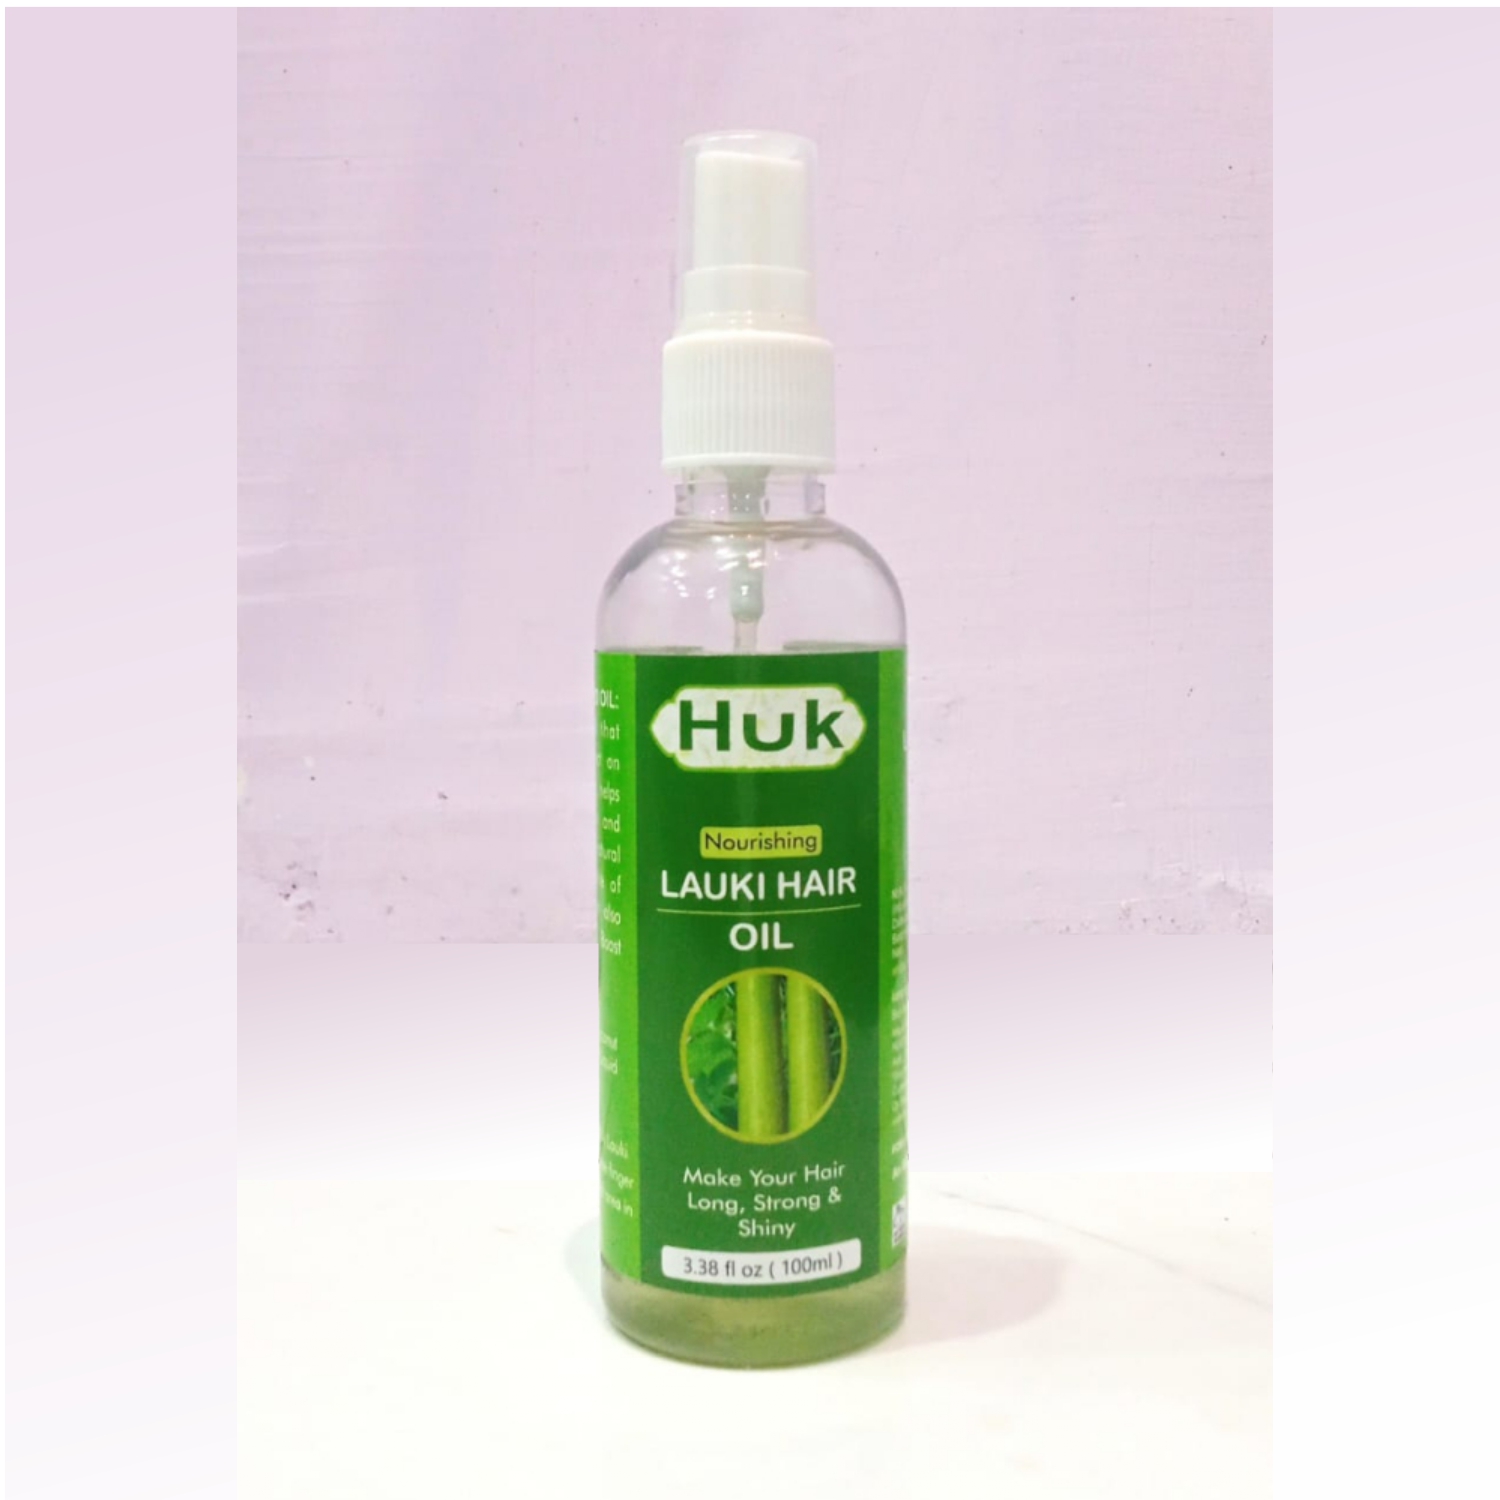 Huk Lauki Hair Oil from Huk